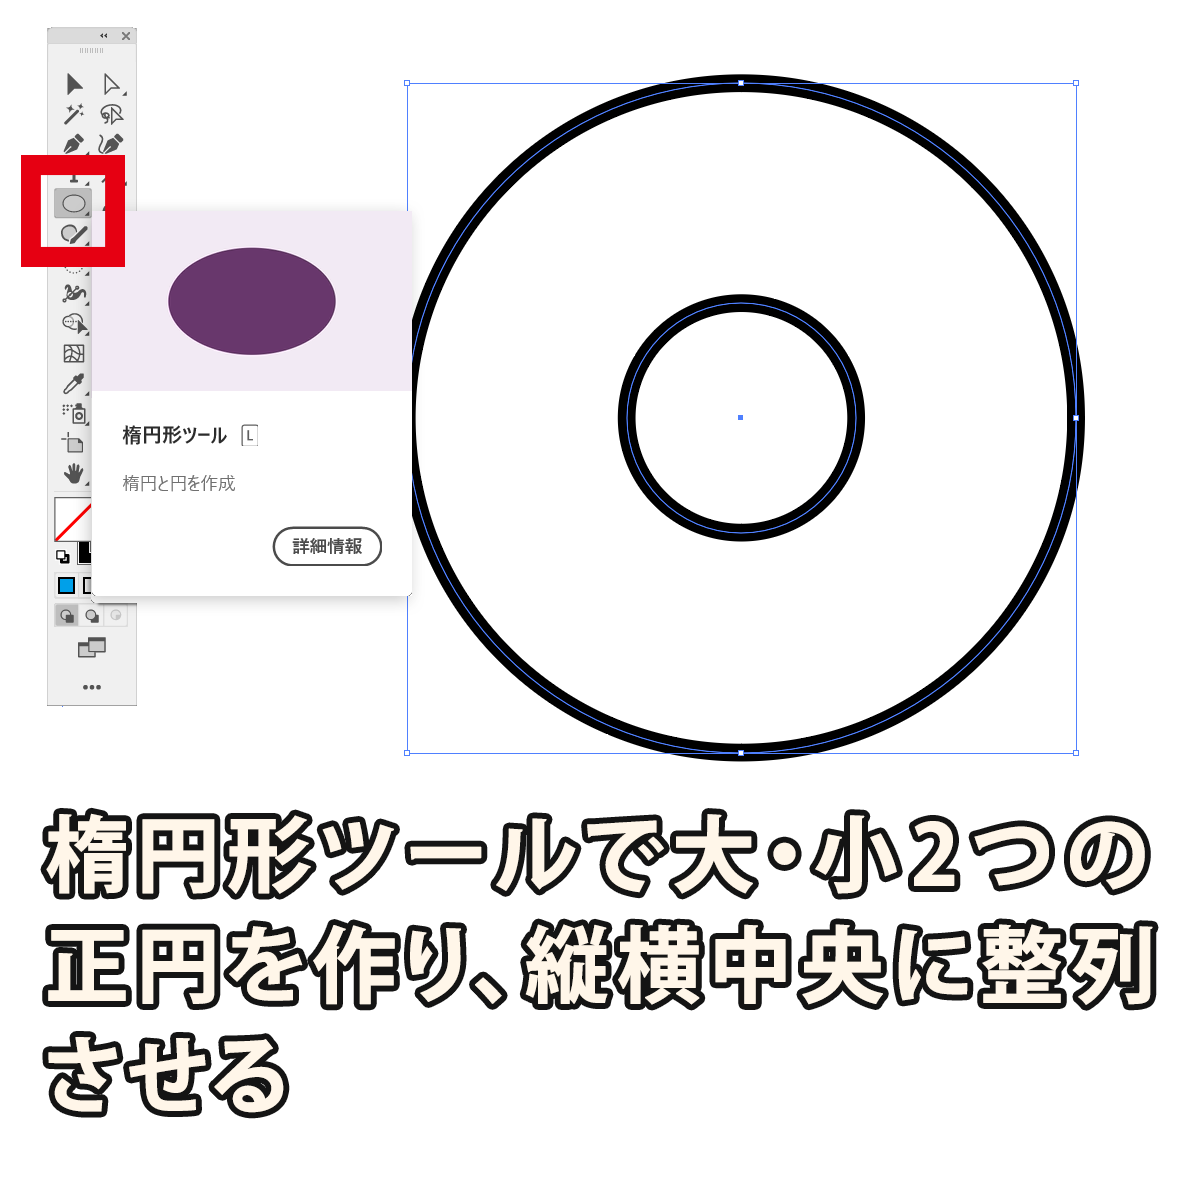 楕円形ツールで大小2つの正円を作り、縦横中央に整列させる